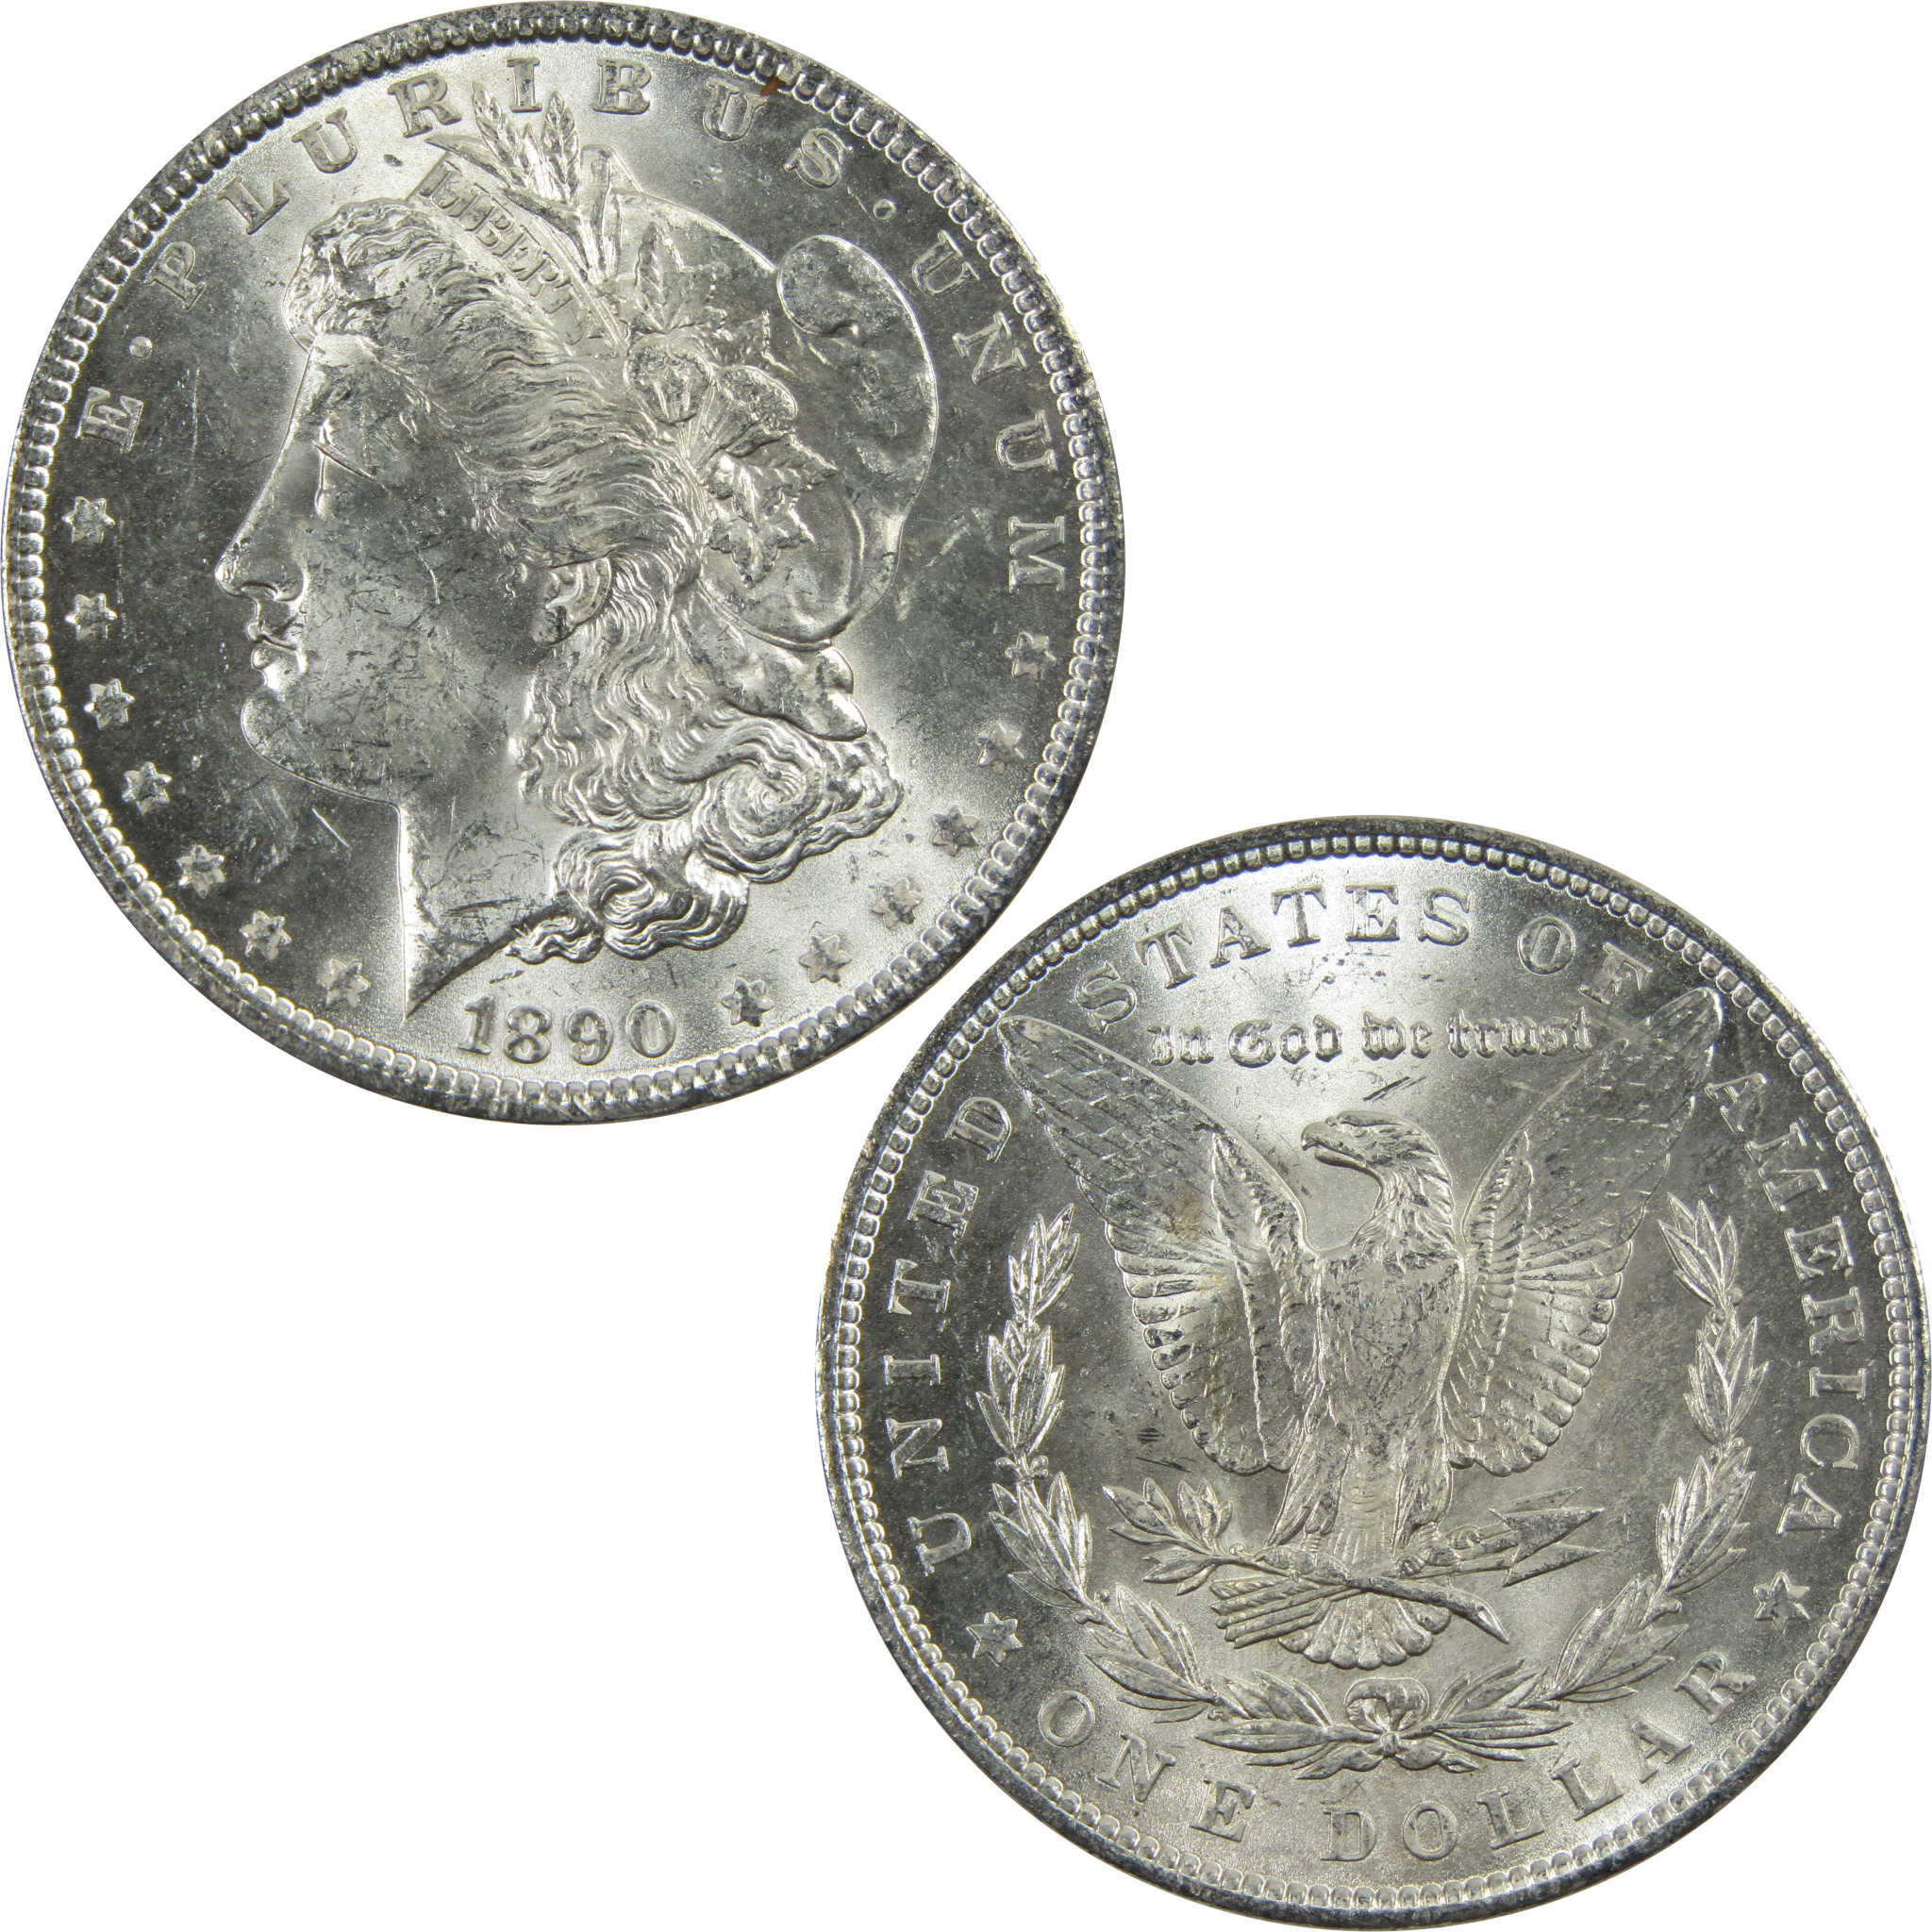 1890 Morgan Dollar BU Uncirculated 90% Silver $1 Coin SKU:I5128 - Morgan coin - Morgan silver dollar - Morgan silver dollar for sale - Profile Coins &amp; Collectibles